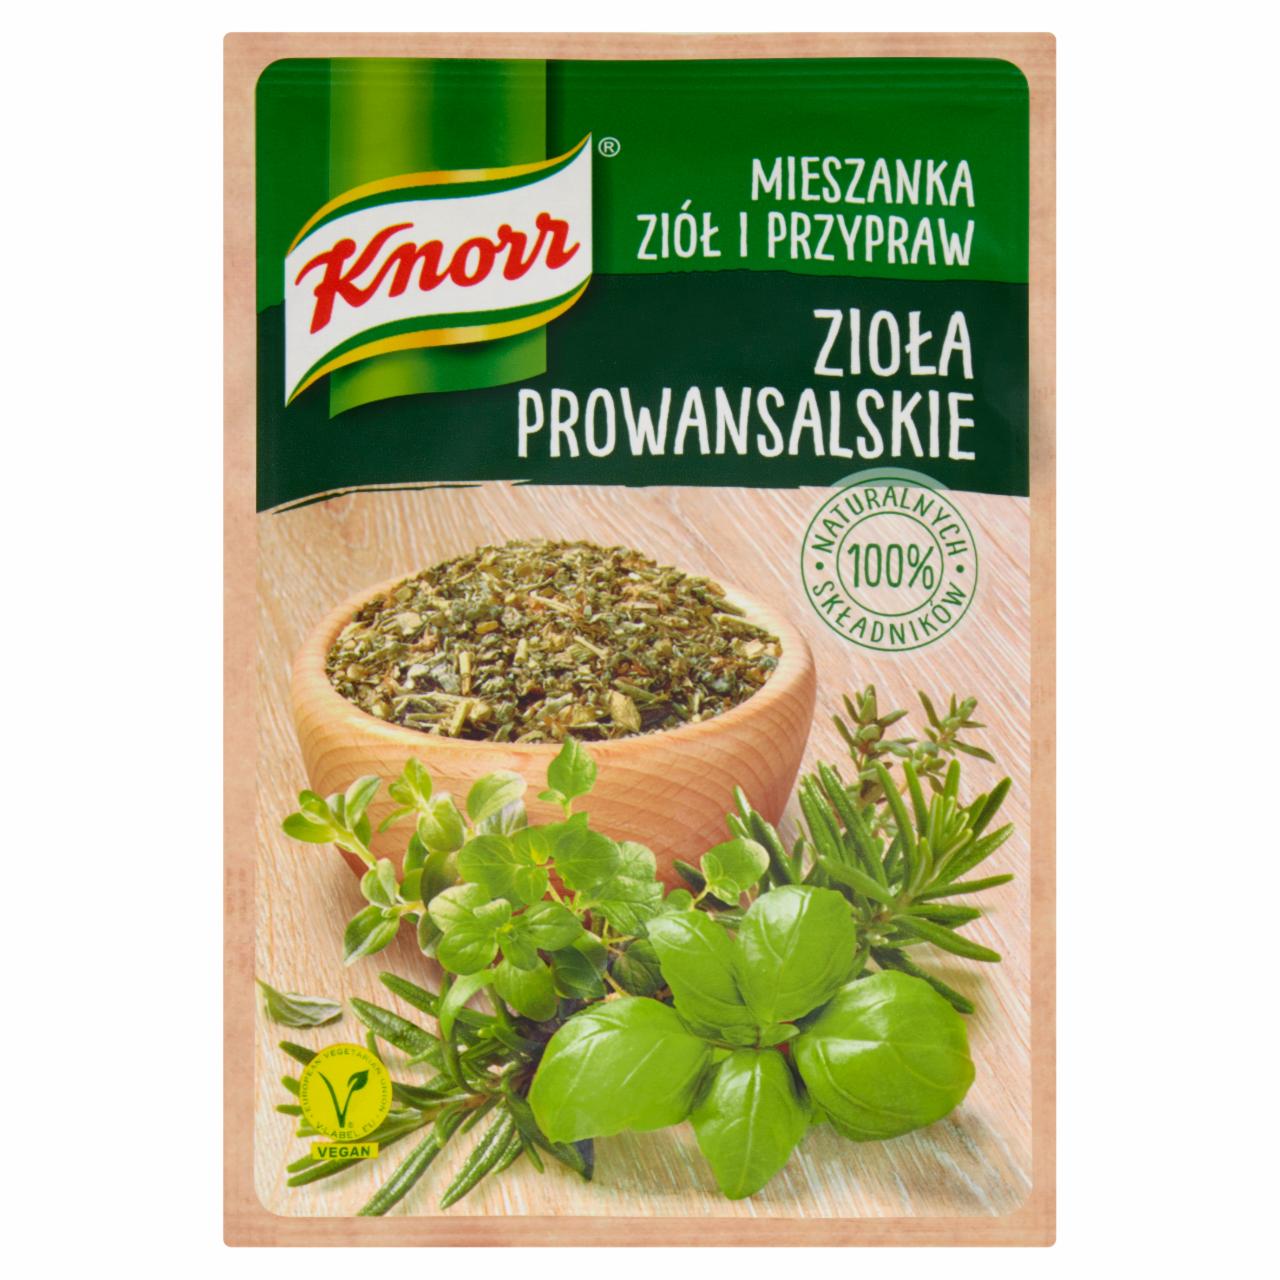 Zdjęcia - Knorr Mieszanka ziół i przypraw zioła prowansalskie 10 g